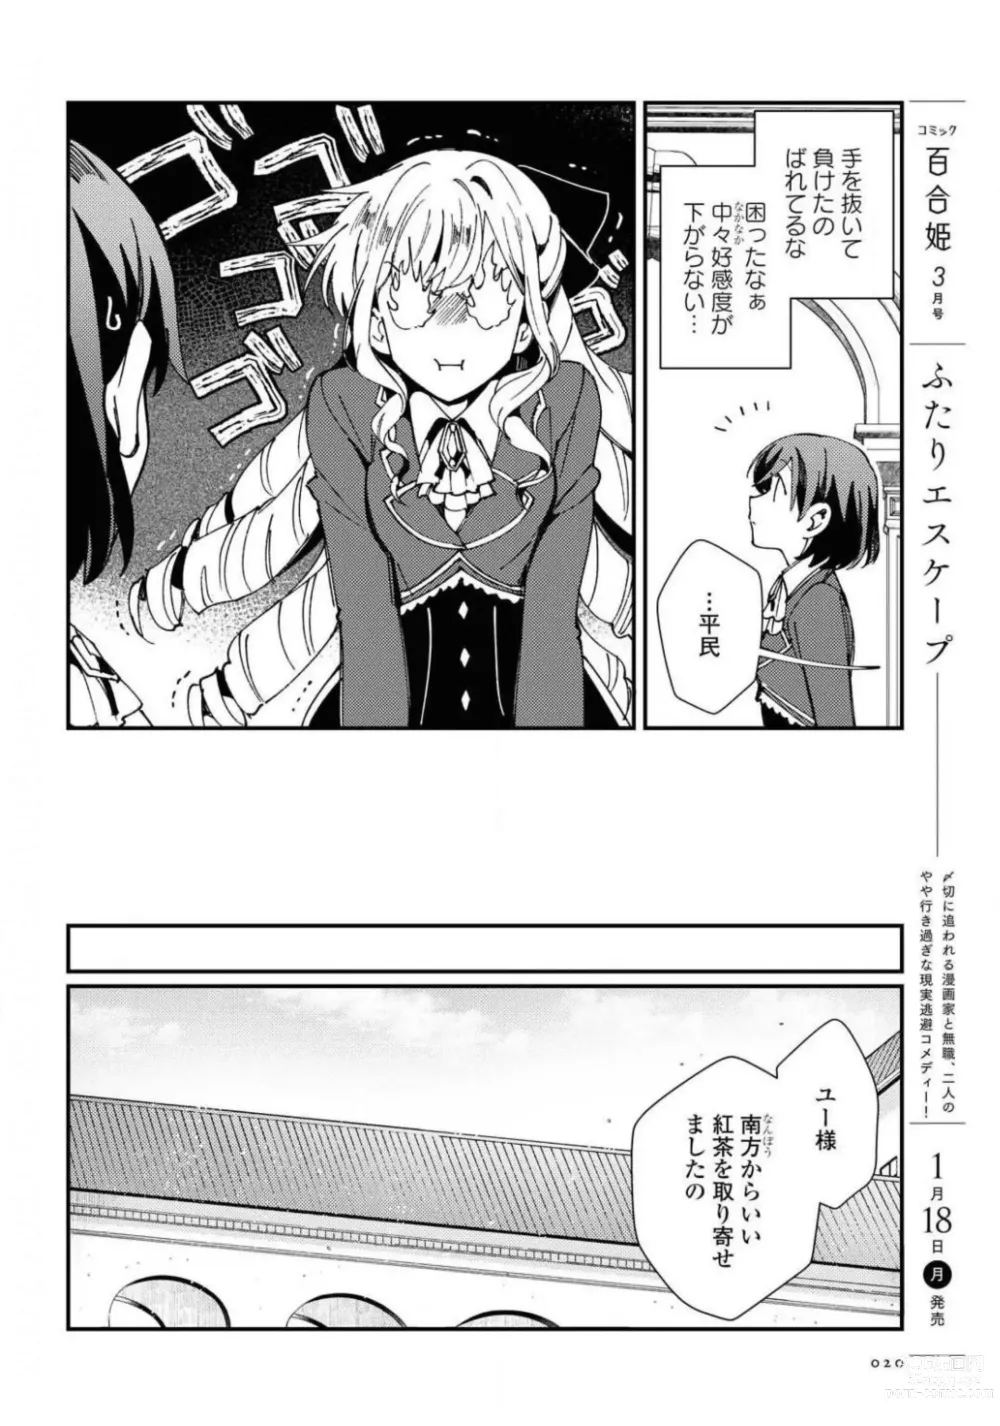 Page 20 of manga Comic Yuri Hime 2021-02